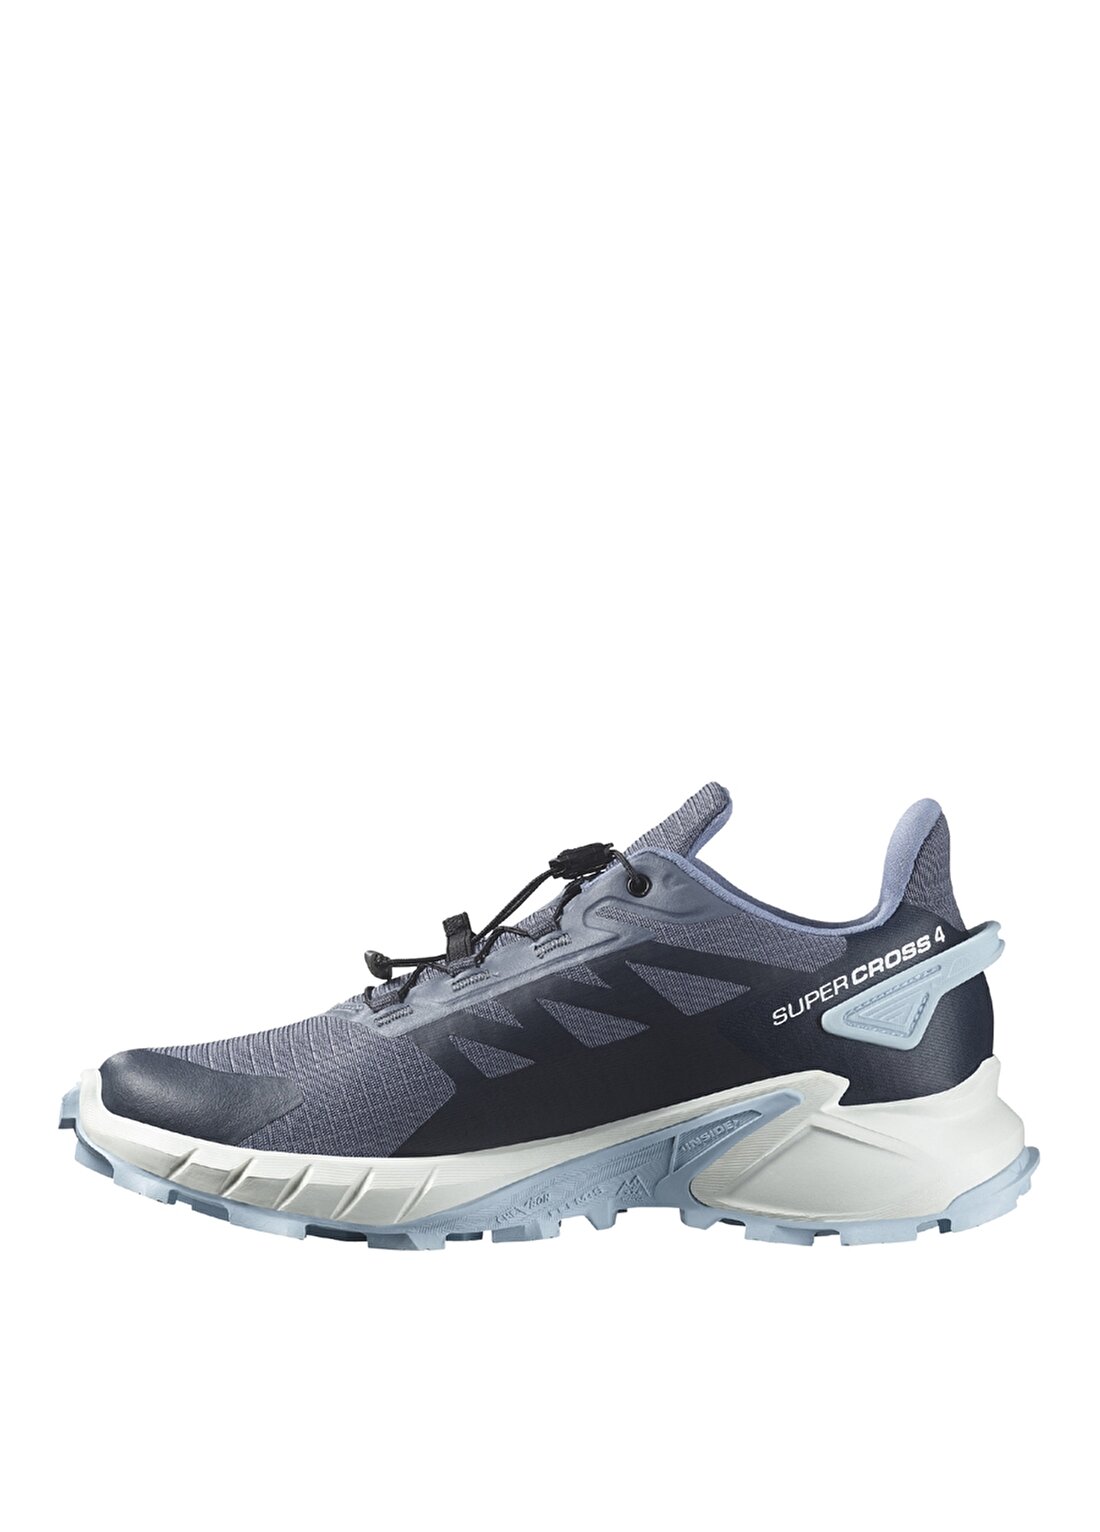 Salomon Gri - Mavi Kadın Koşu Ayakkabısı L47461700_SUPERCROSS 4 W